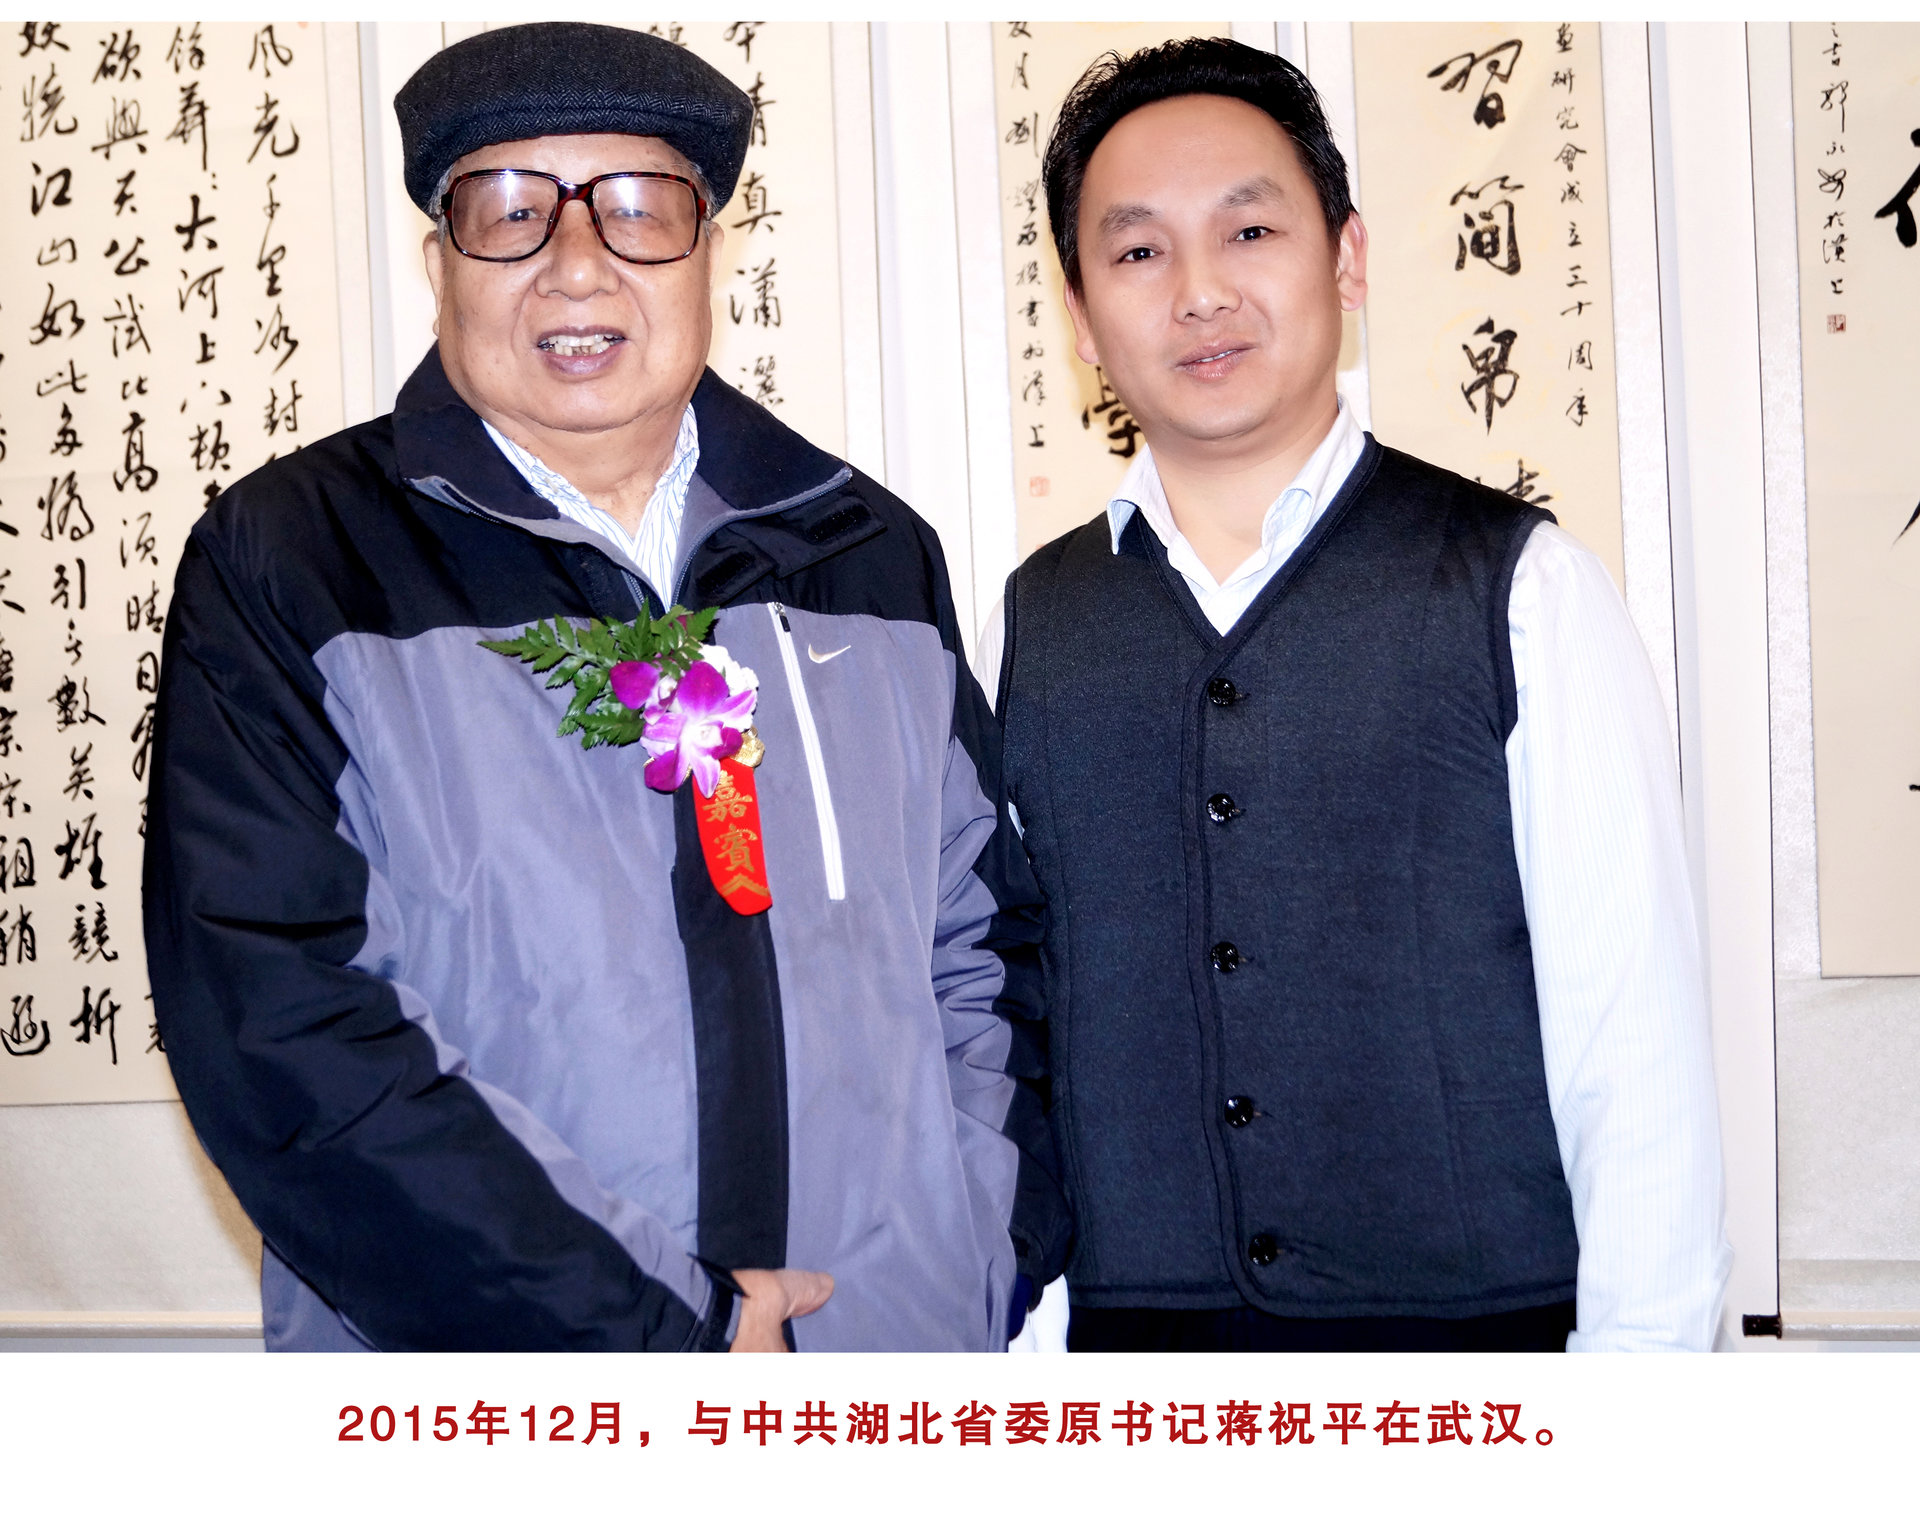 2015年12月與湖北省委原書記蔣祝平在武漢